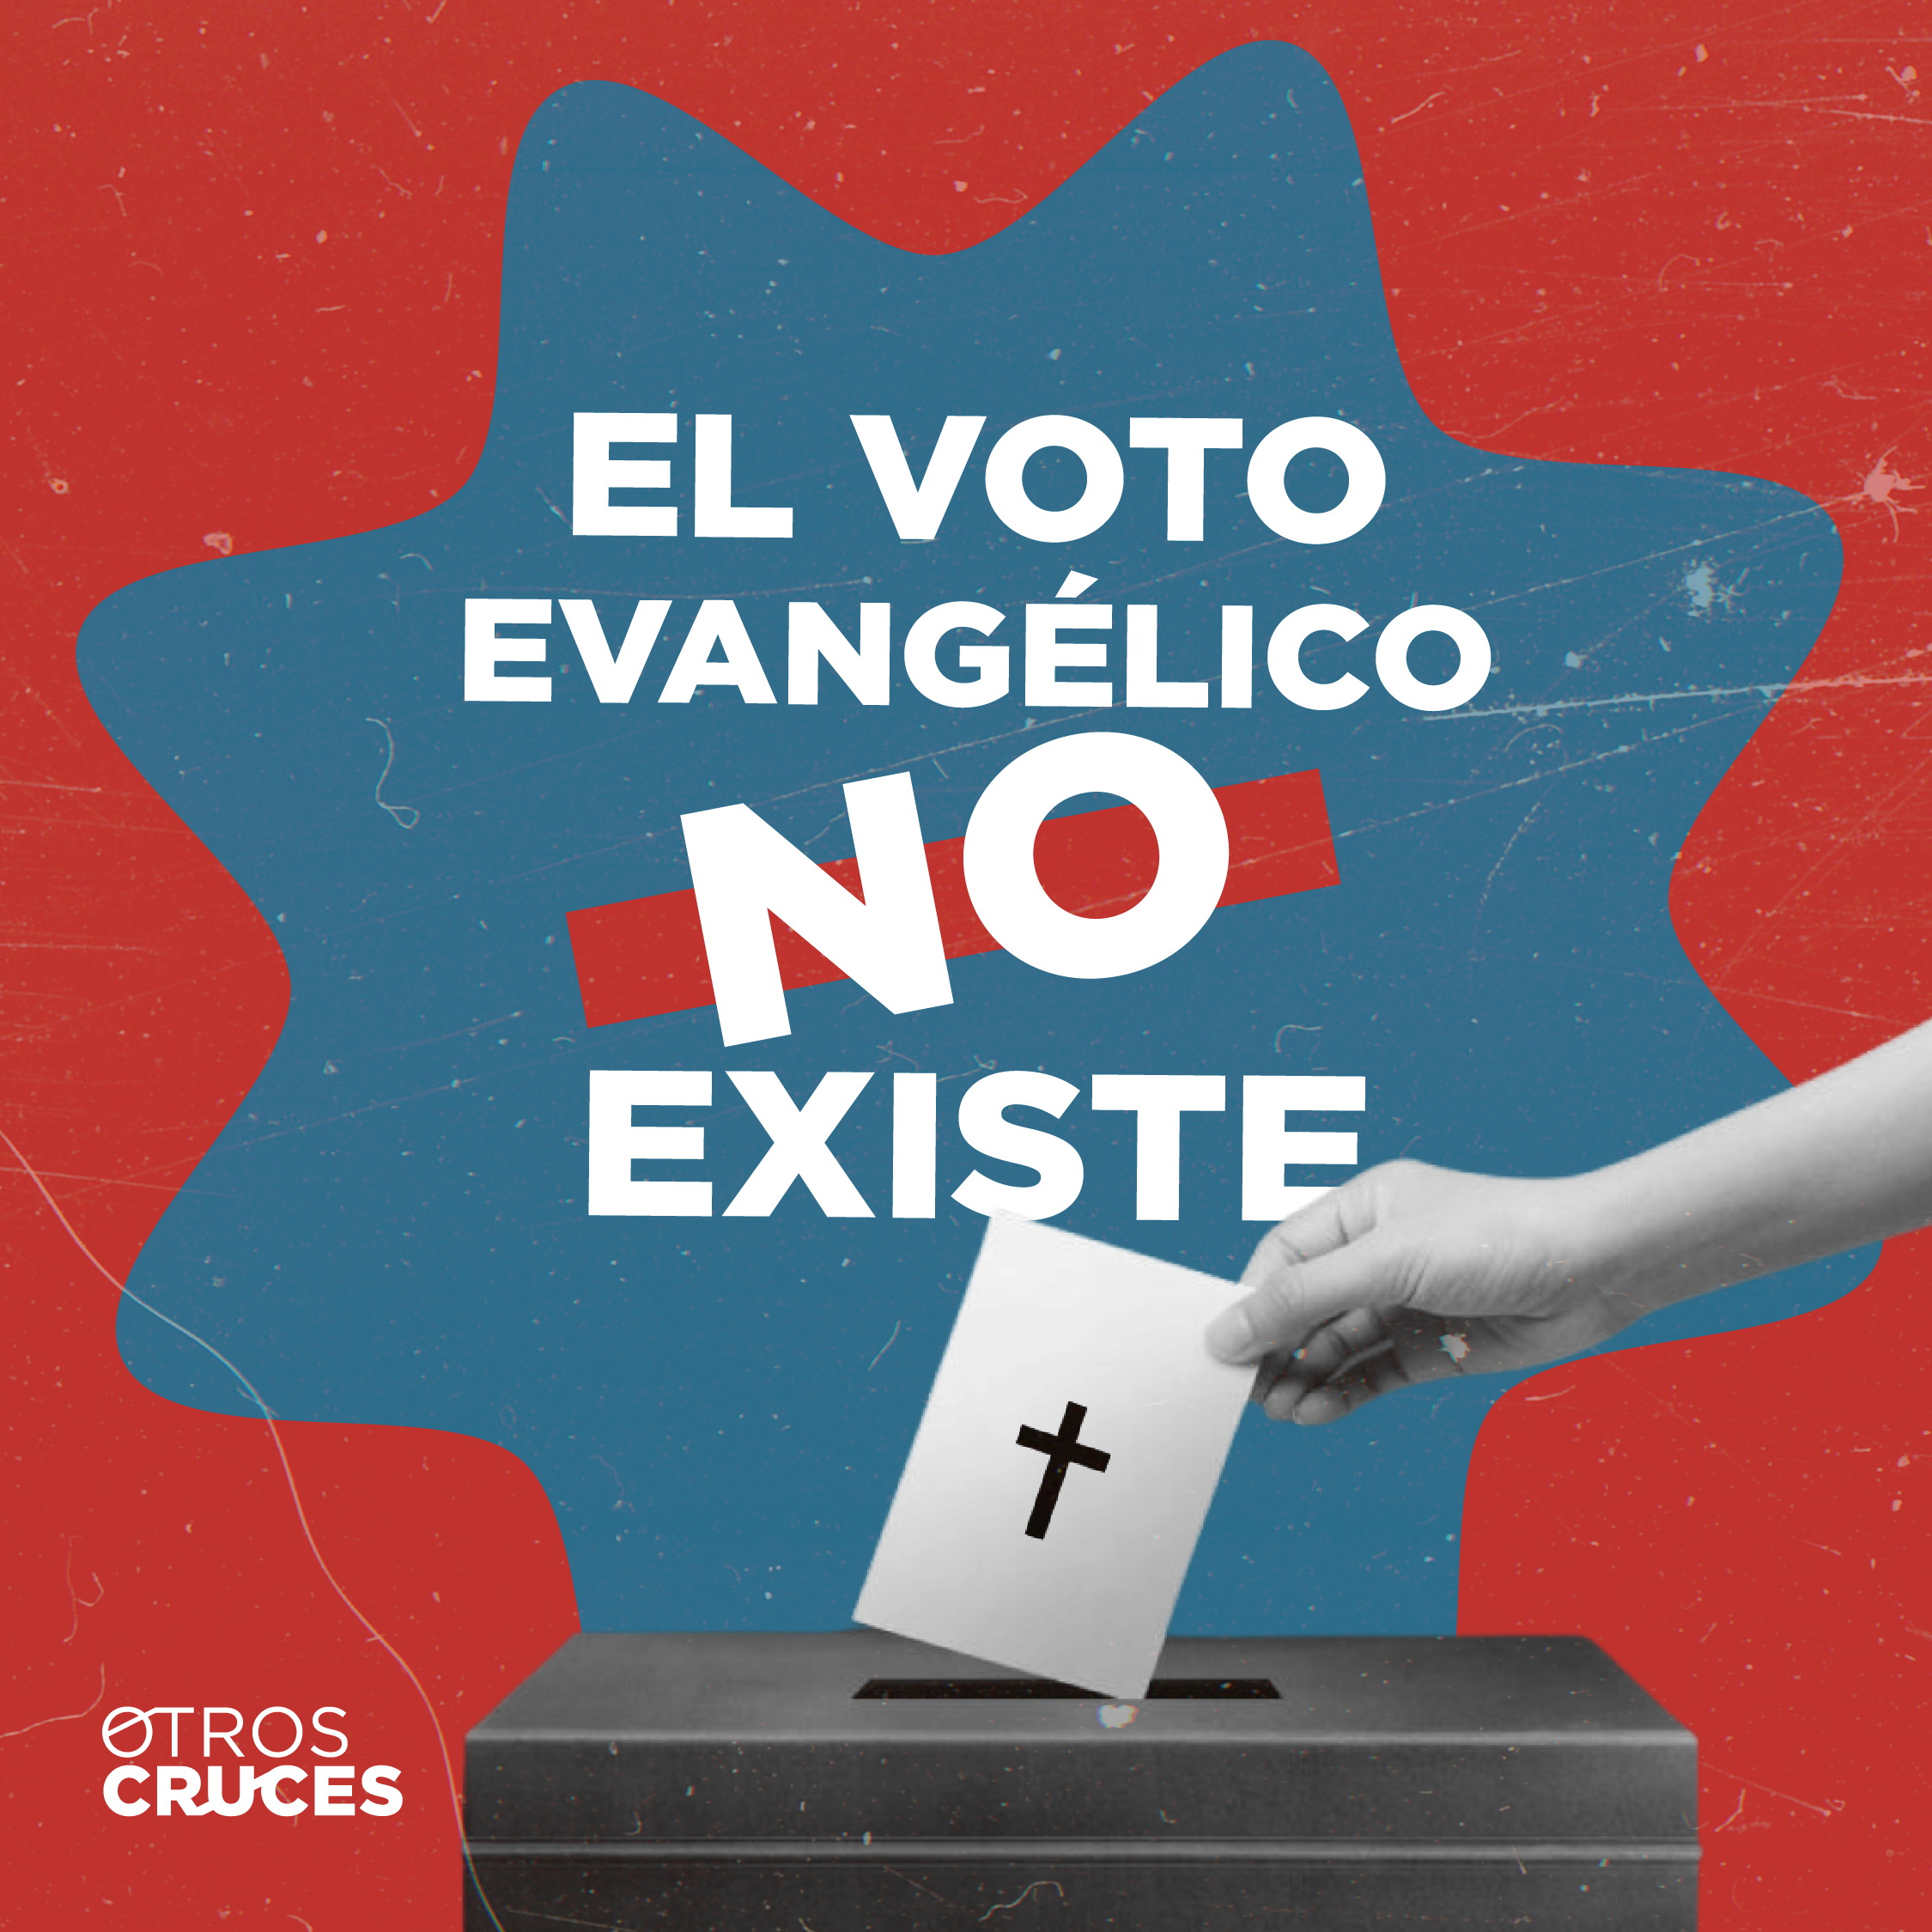 El voto evangélico no existe